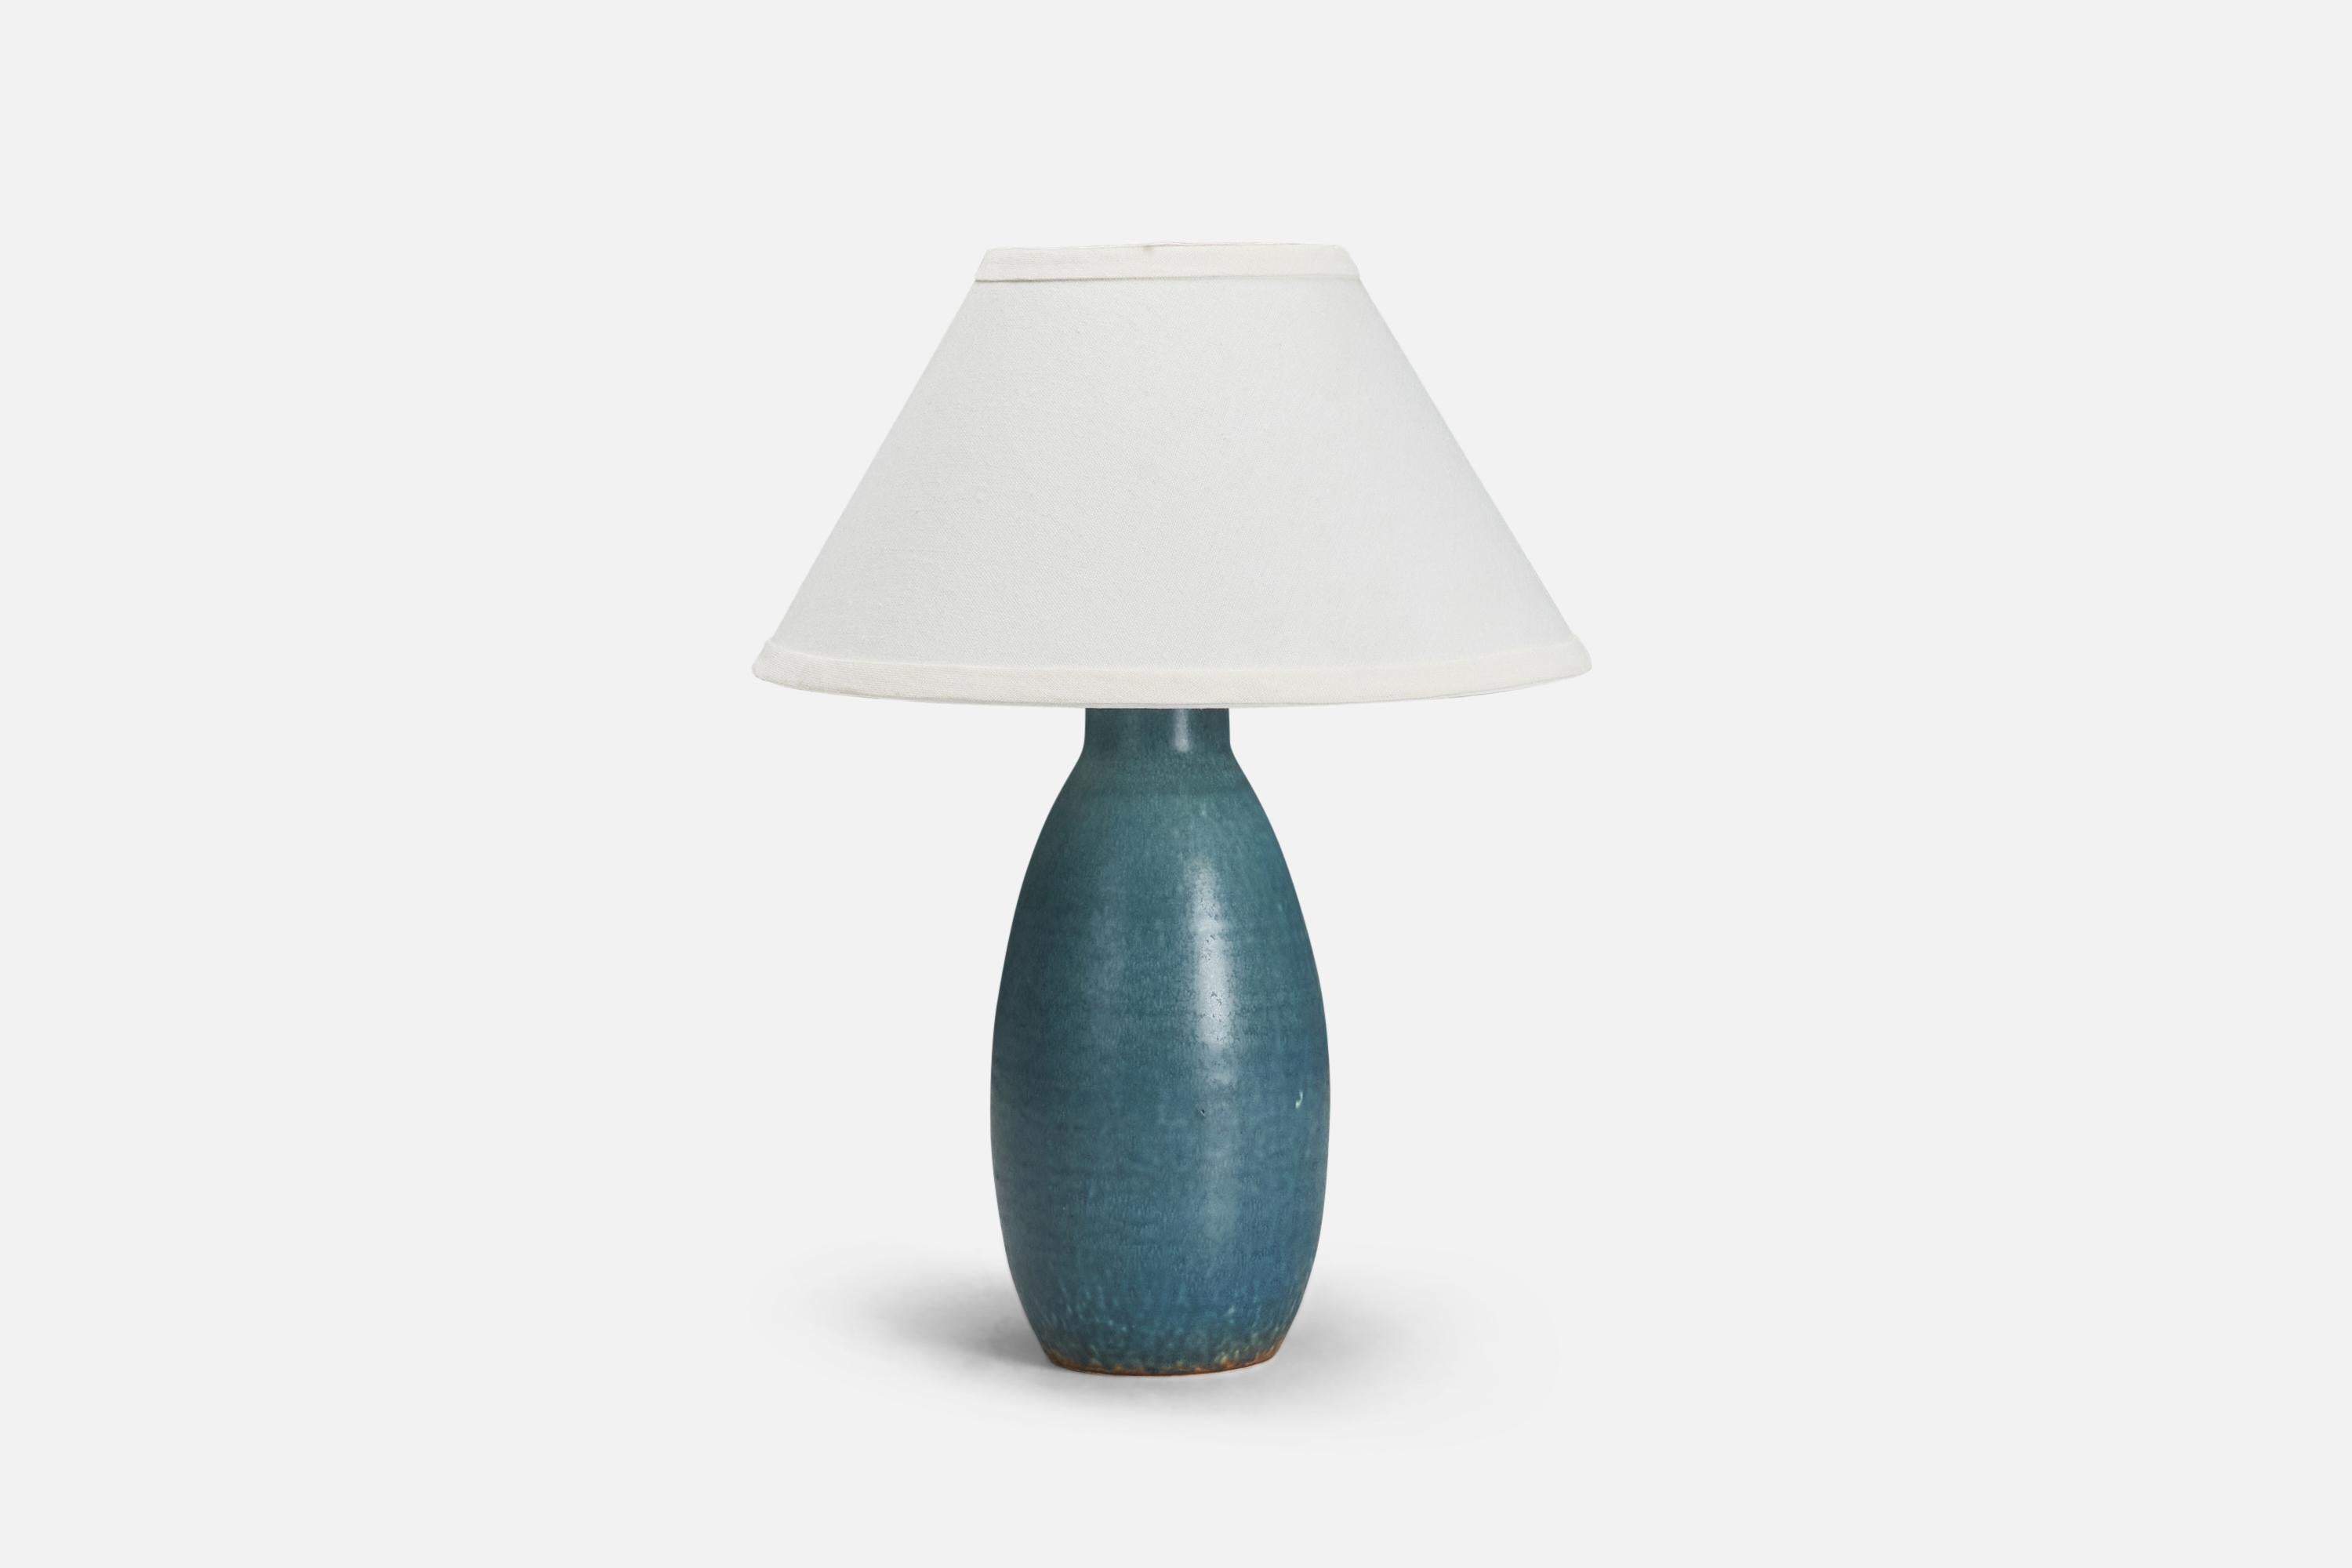 Lampe de table produite par Søholm Keramik, situé sur l'île de Bornholm au Danemark. En glaçure bleue très artistique. 

L'abat-jour est joint à titre de référence et n'est pas inclus dans l'achat. Mesuré sans abat-jour.

Parmi les autres